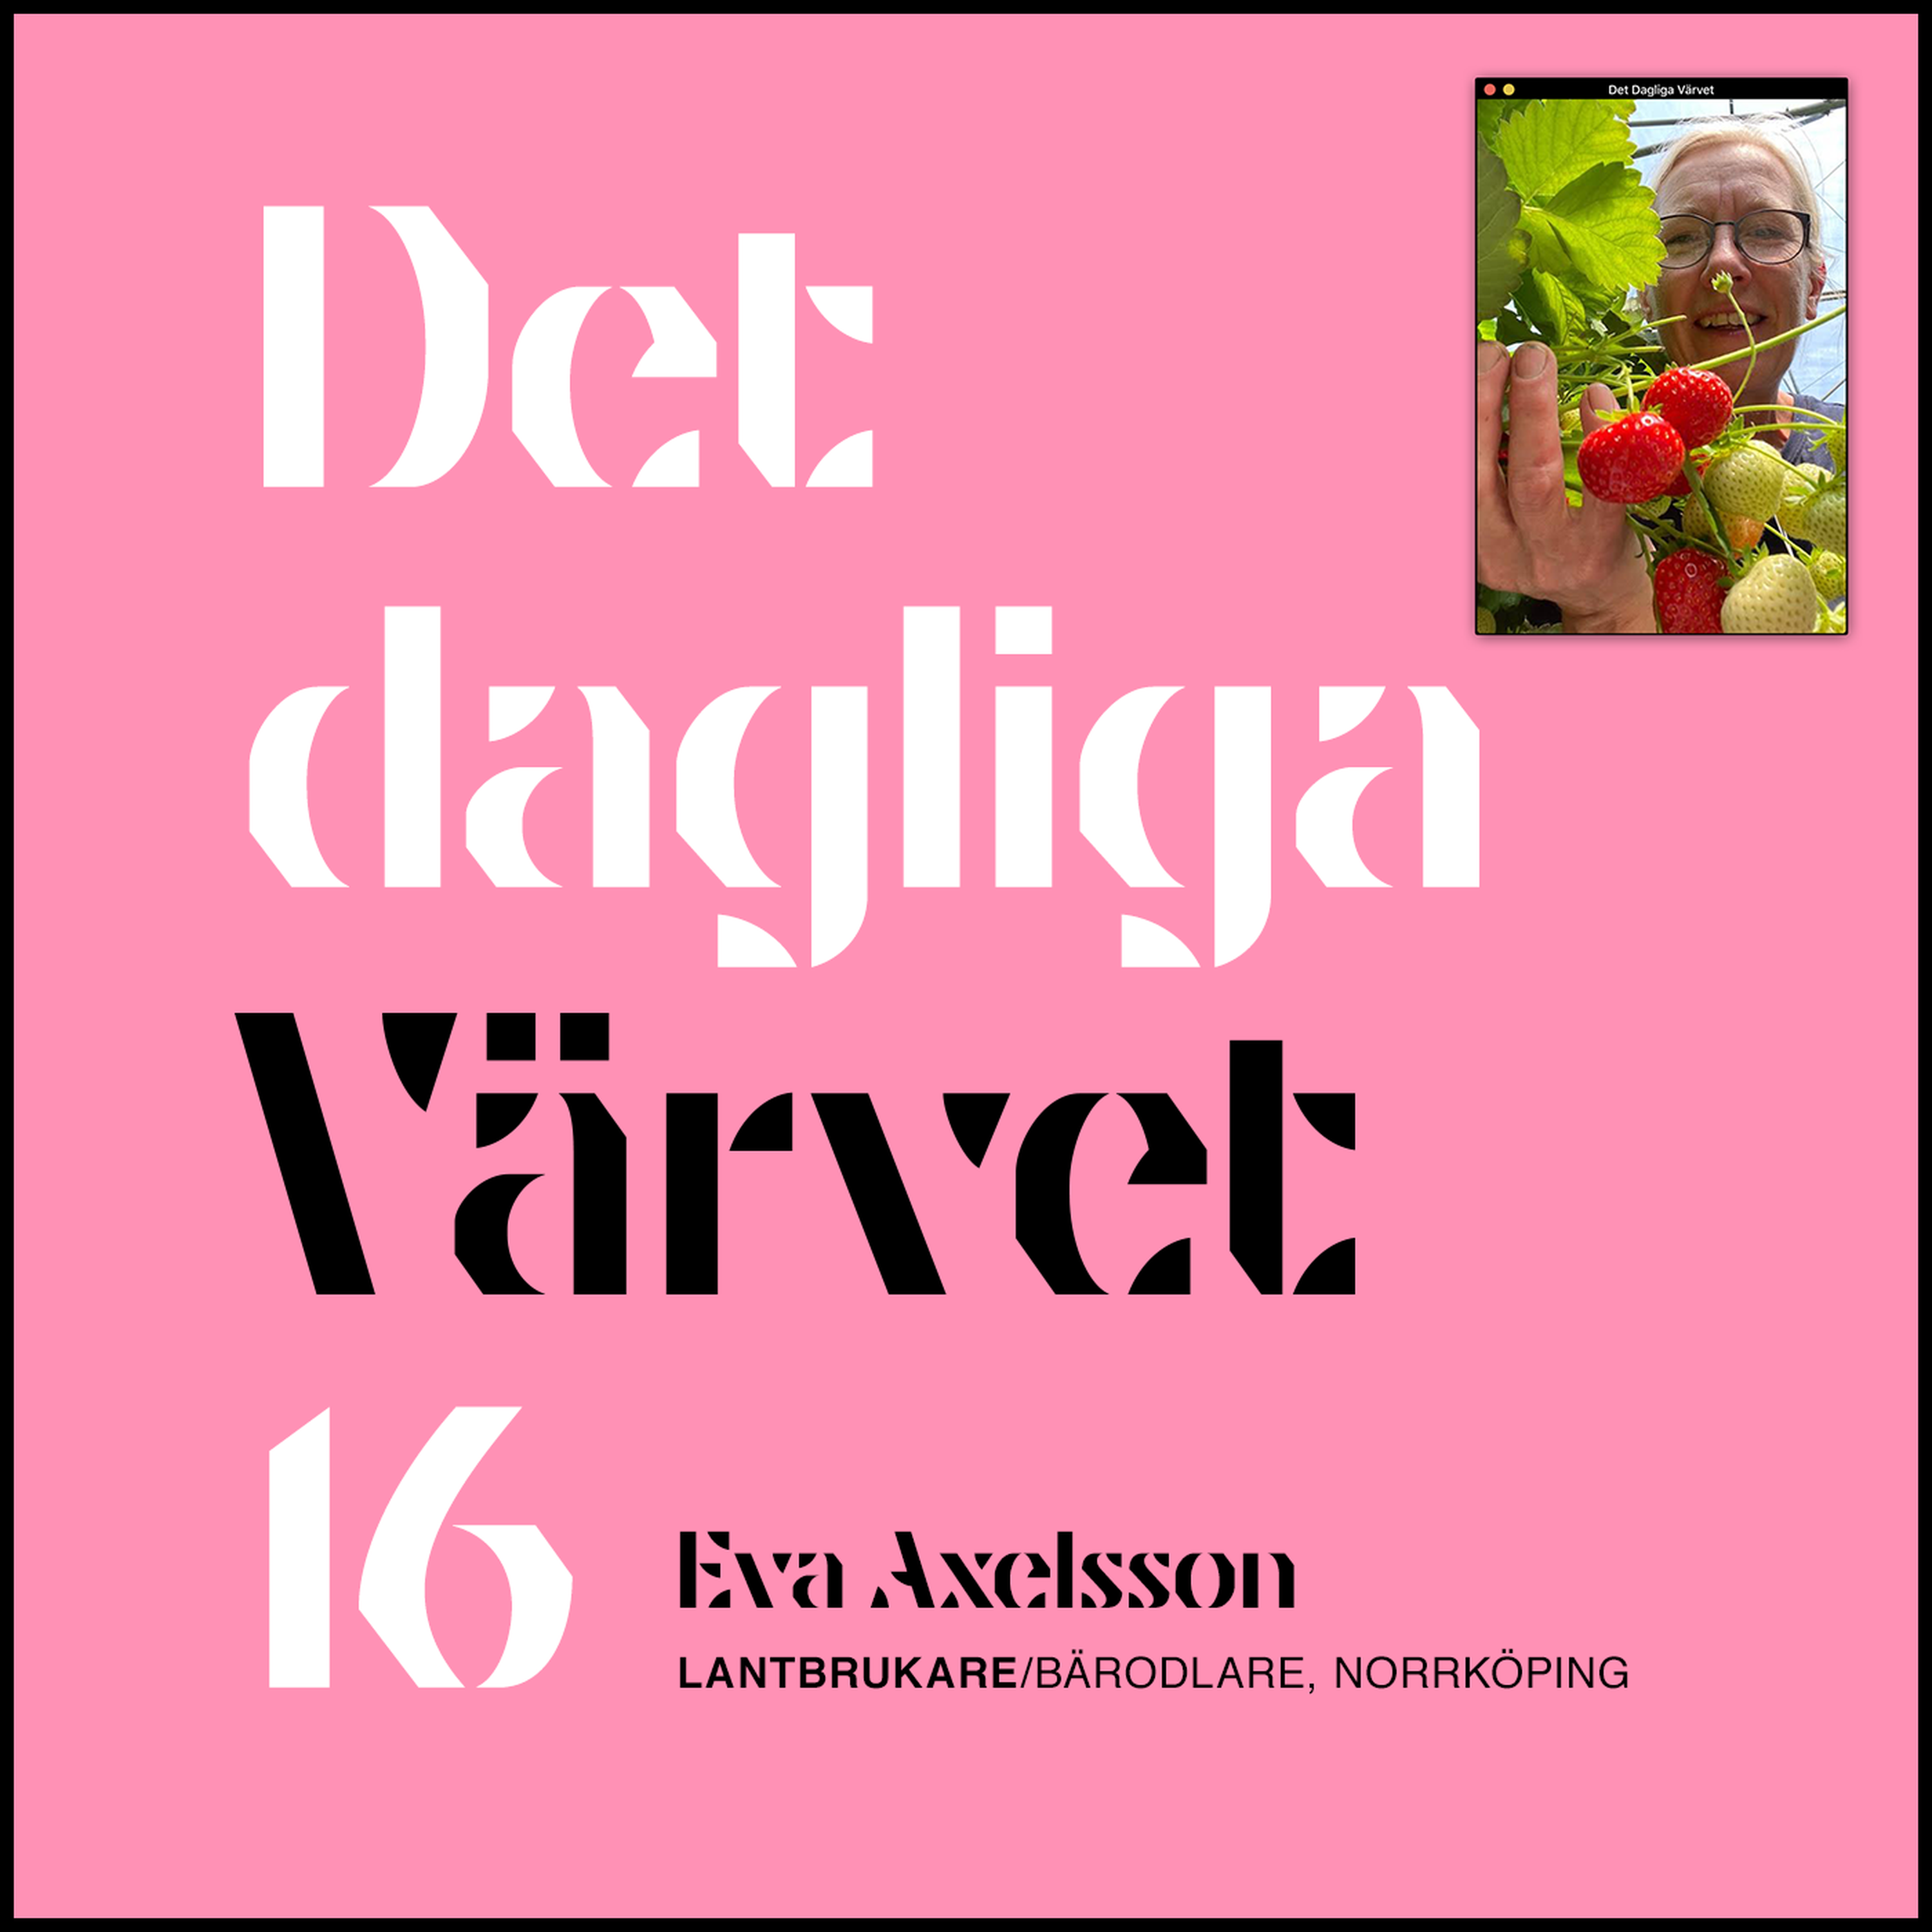 DET DAGLIGA VÄRVET #16 EVA AXELSSON